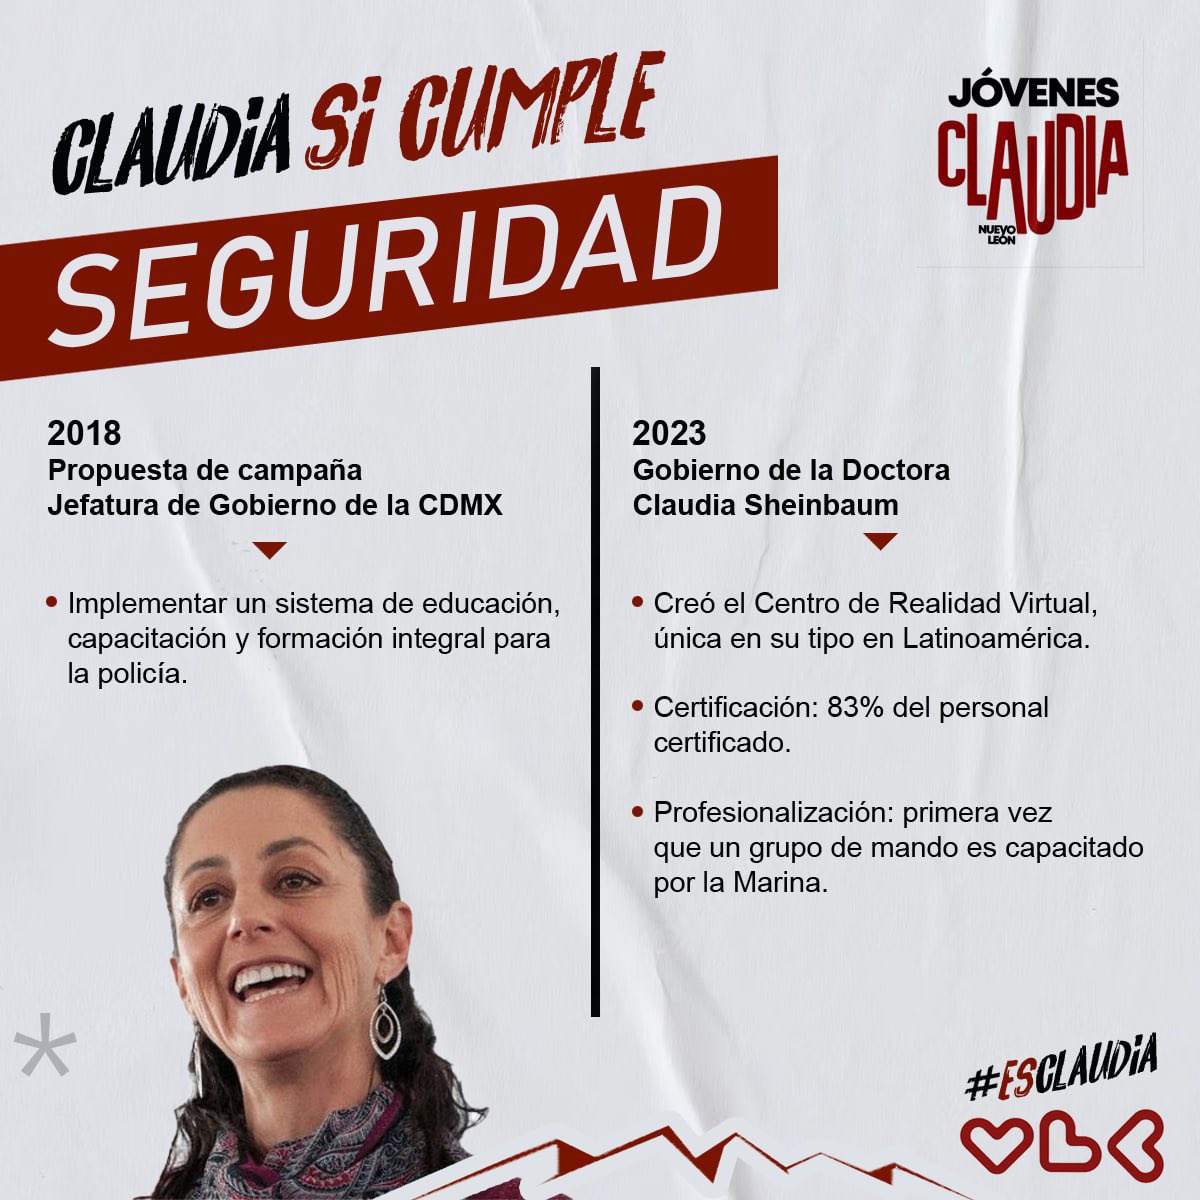 #ClaudiaSíCumple 

#EsClaudia una gobernante de resultados 😉🫶🏼 

#JovenEsClaudia #Sheinials #cuartatransformación #4T #corcholatas #ClaudiaSheinbaum #nuevoleon